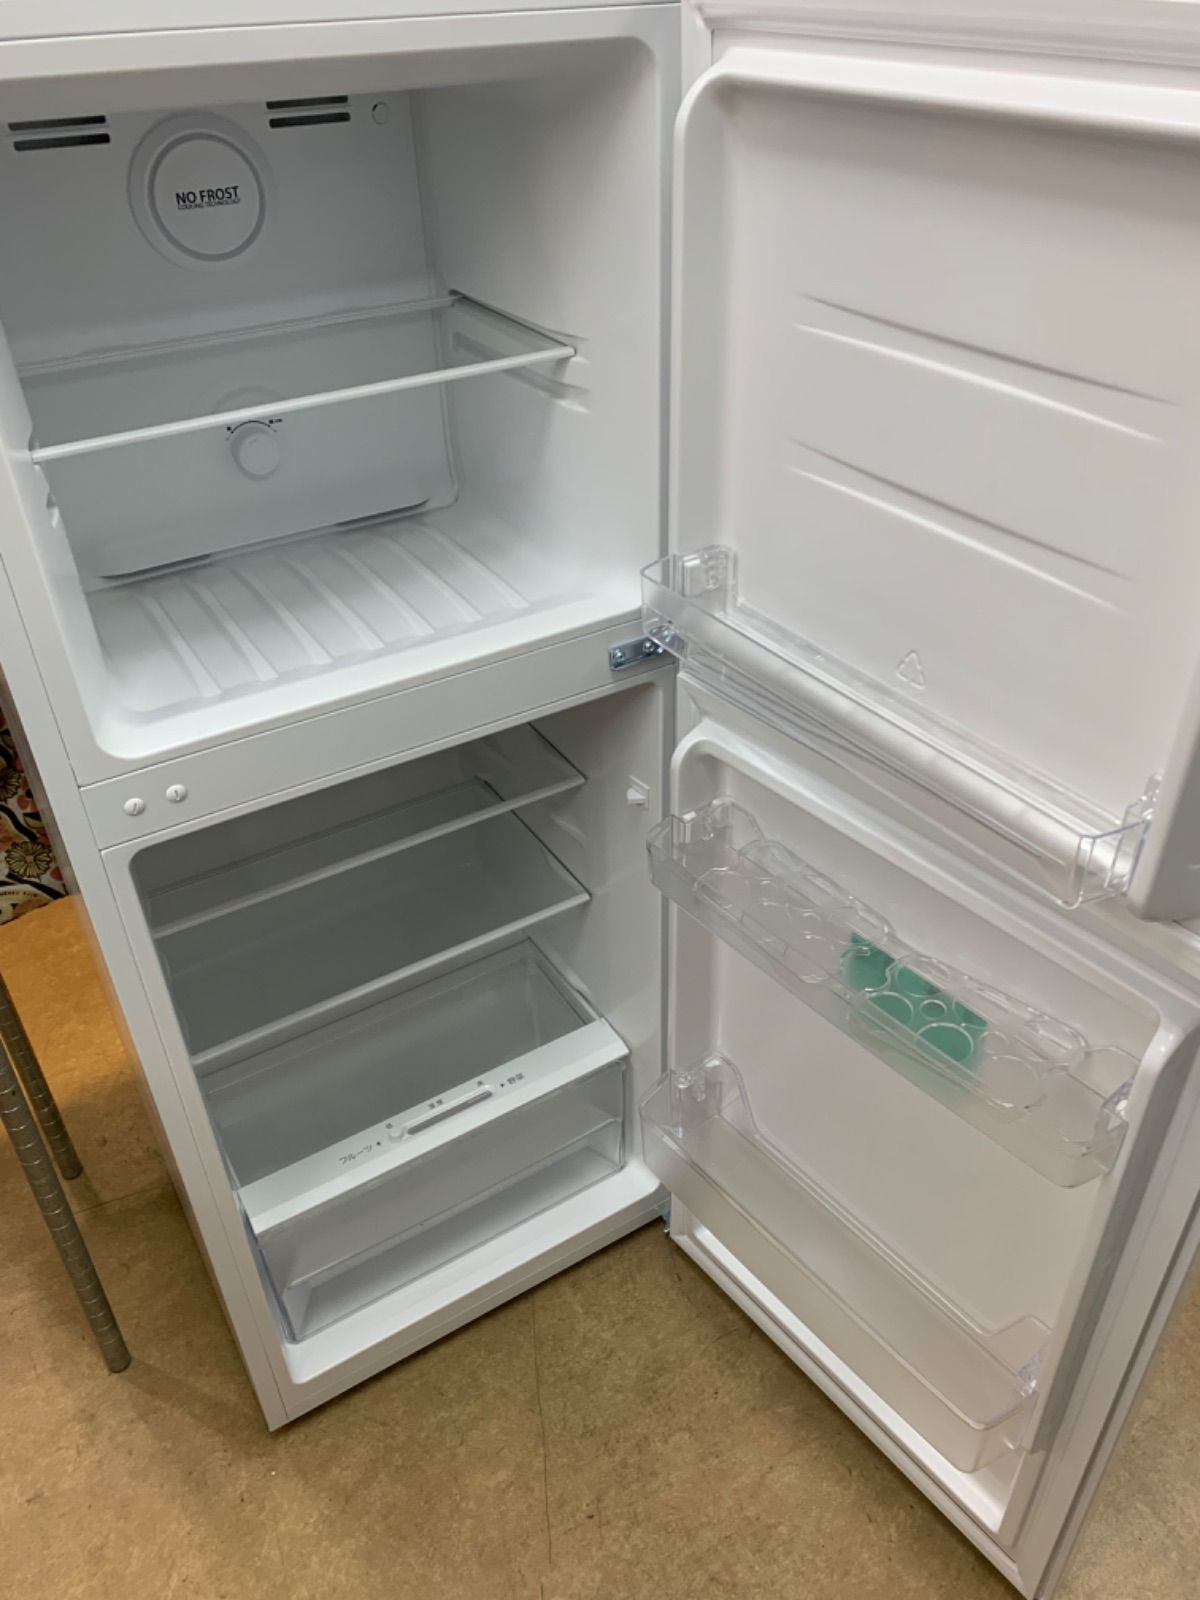 ◇Haier 冷蔵庫 181L 上冷凍 OBBR-181A - メルカリ